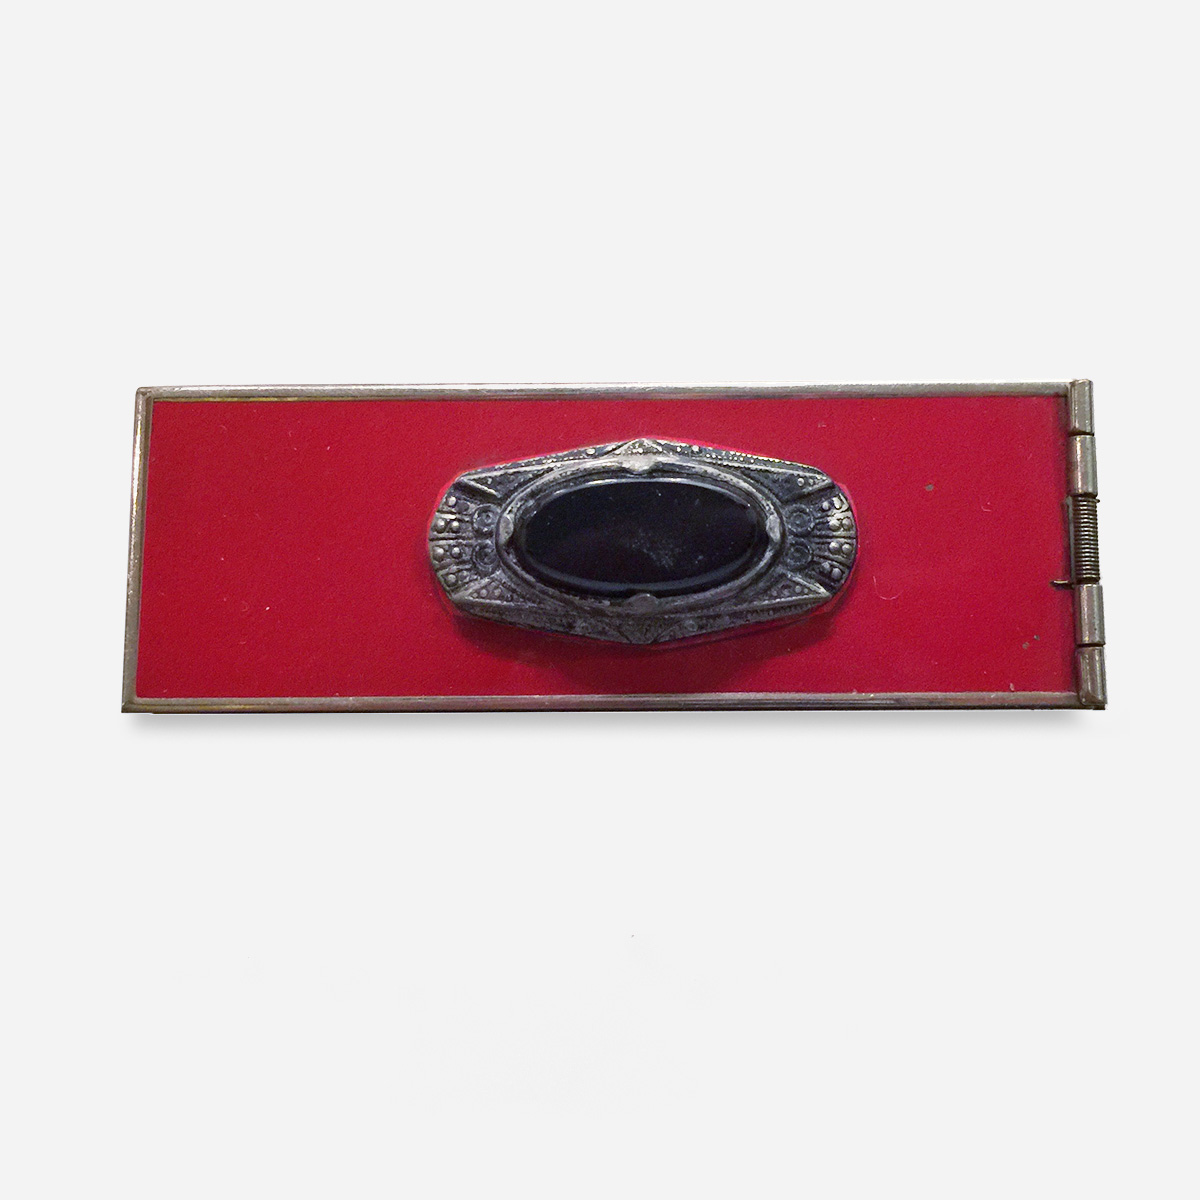 1930s changette brooch